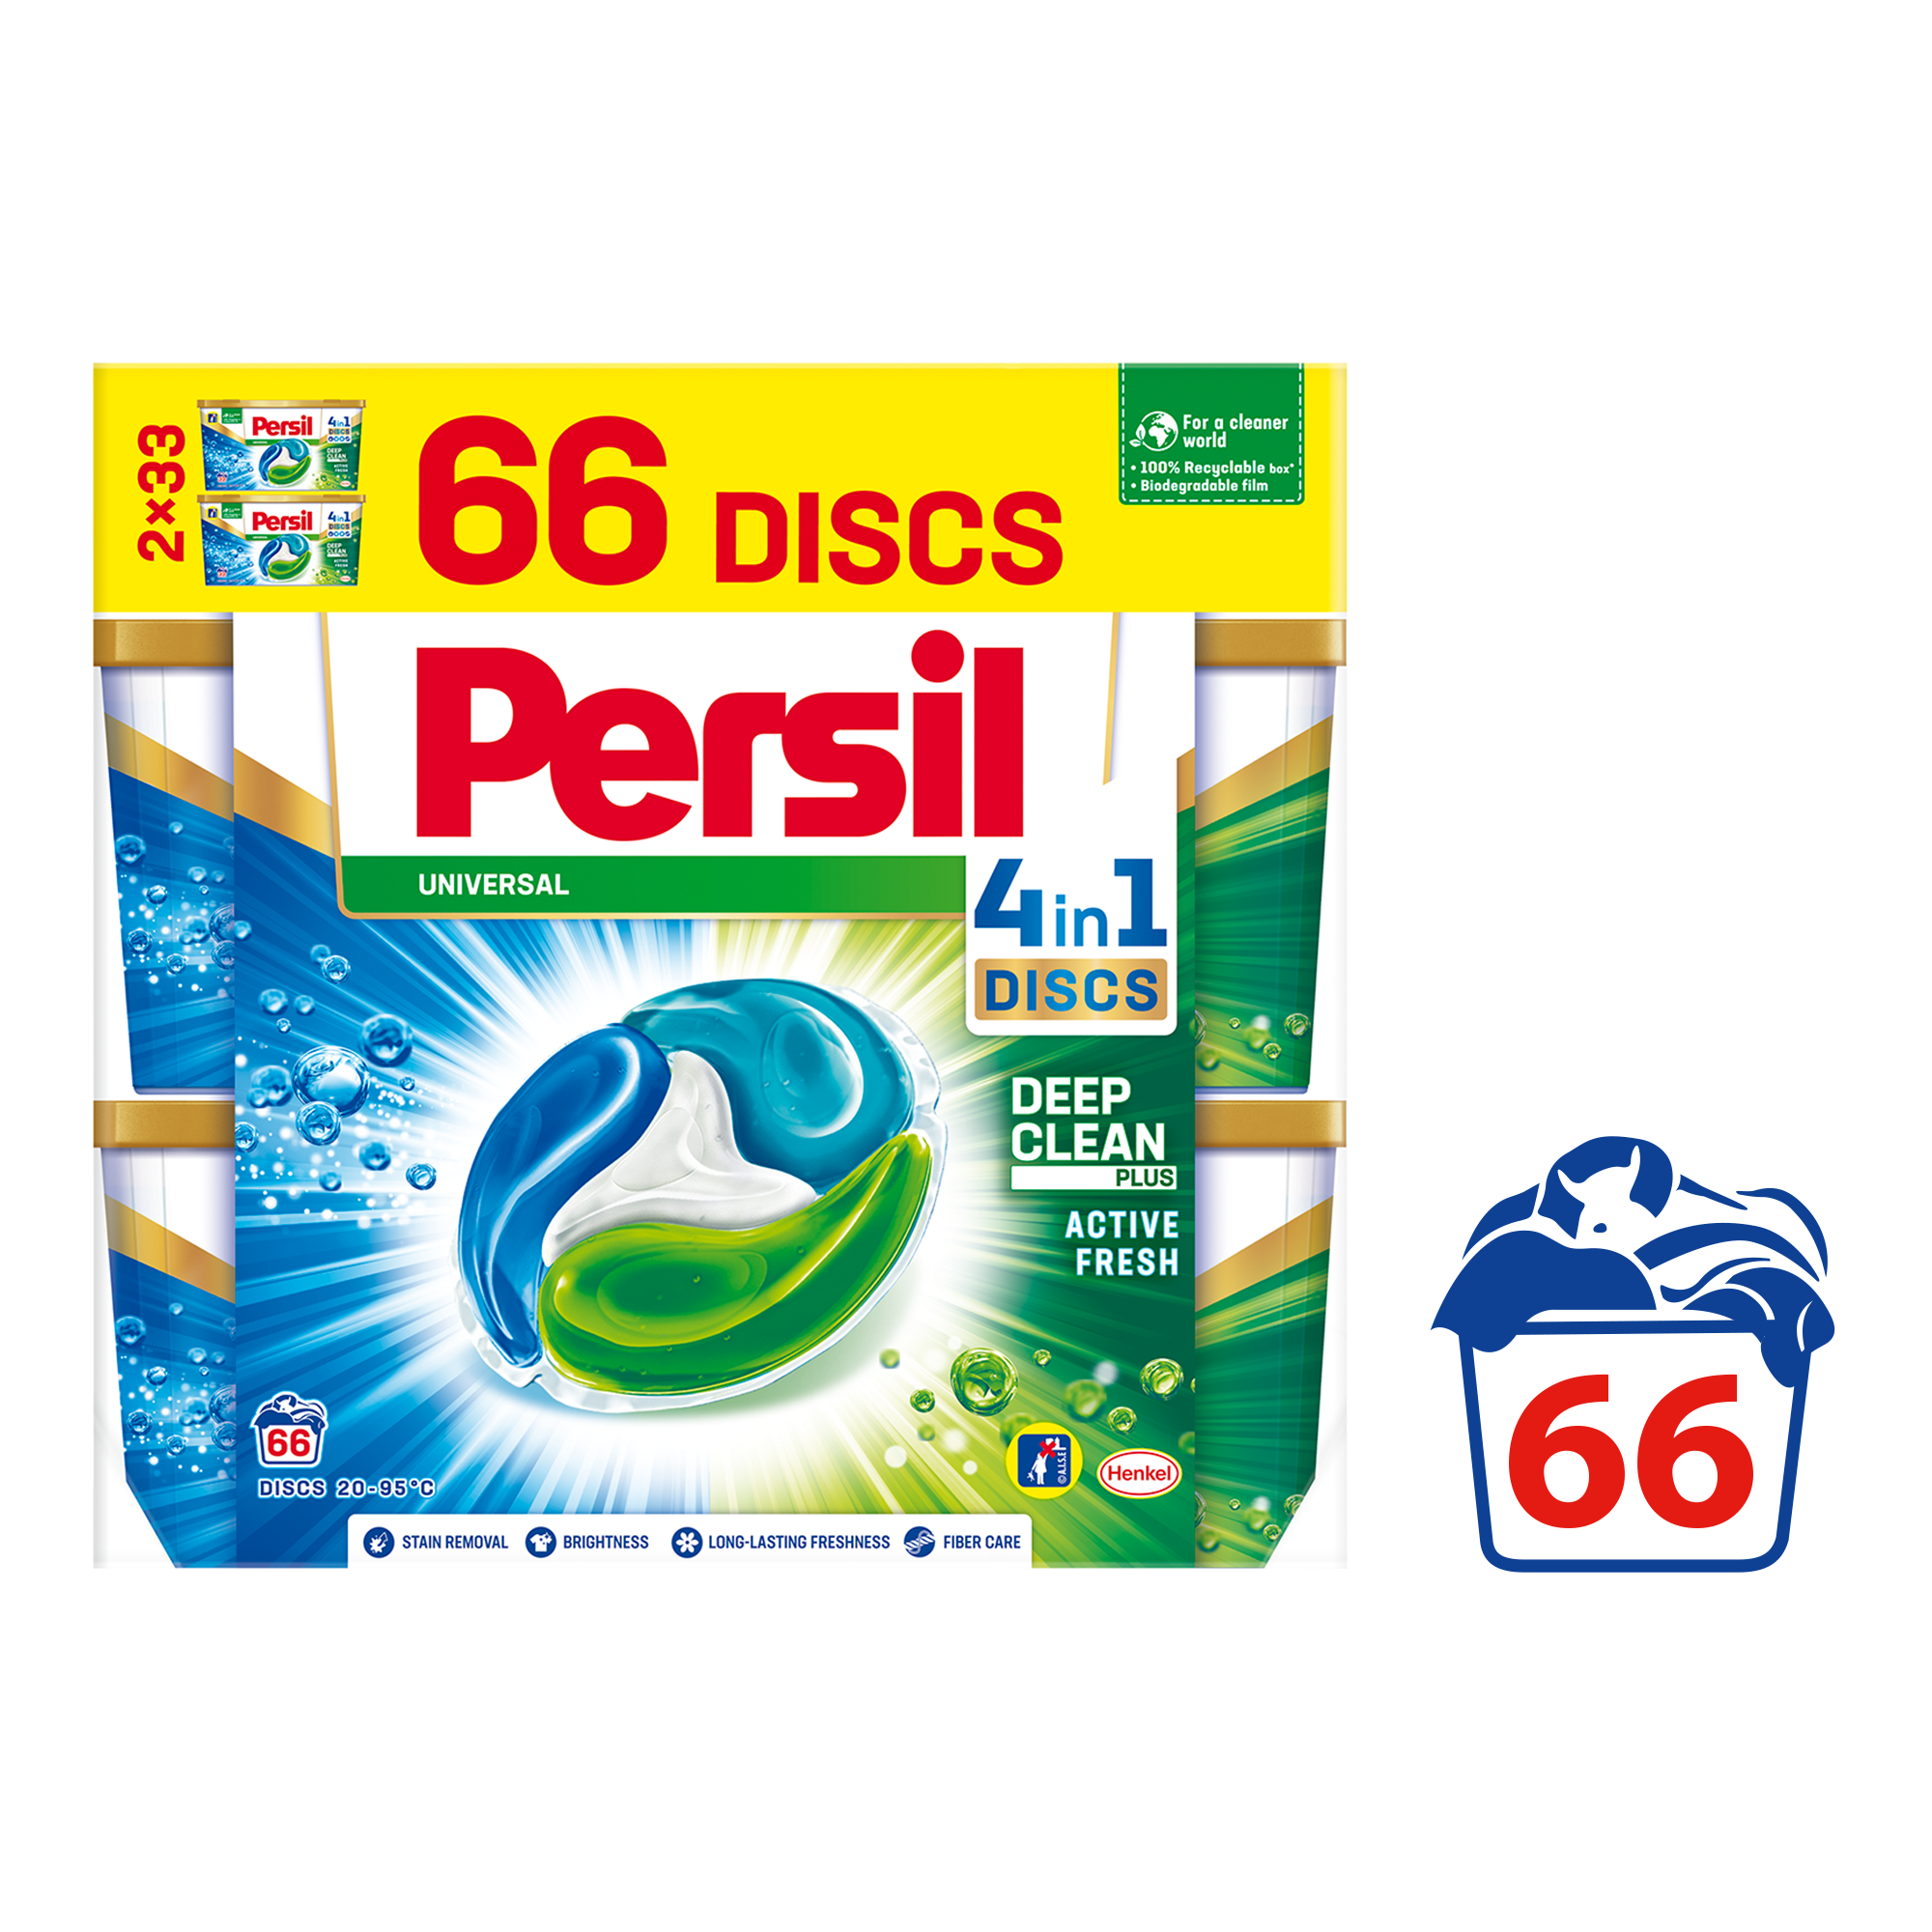 Капсули для прання Persil Discs Universal, 66 шт. (862154) - фото 2